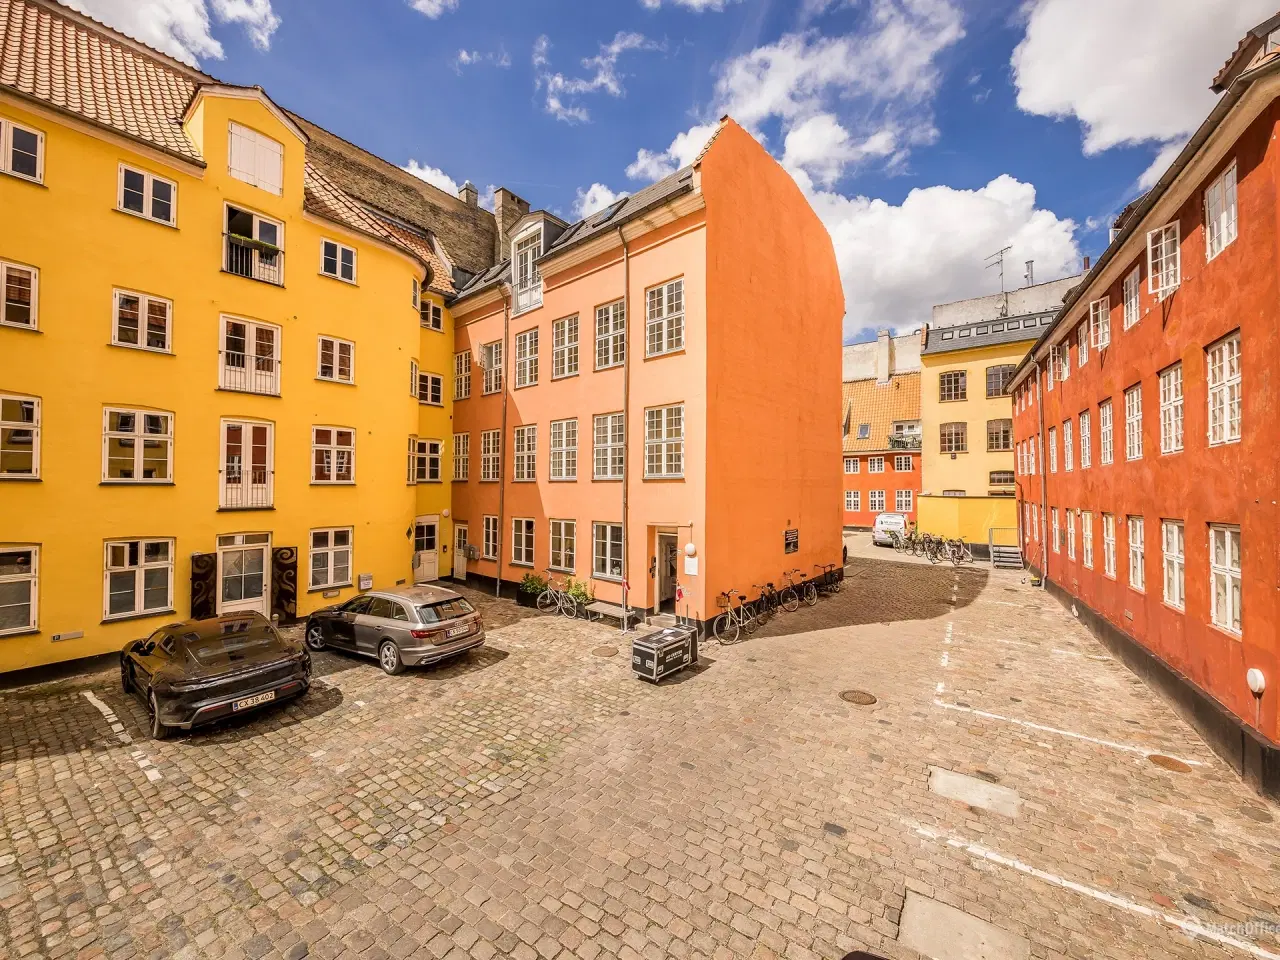 Billede 1 - Kontorer i historisk ejendom i Københavns hyggelige og livlige Latinerkvarter.